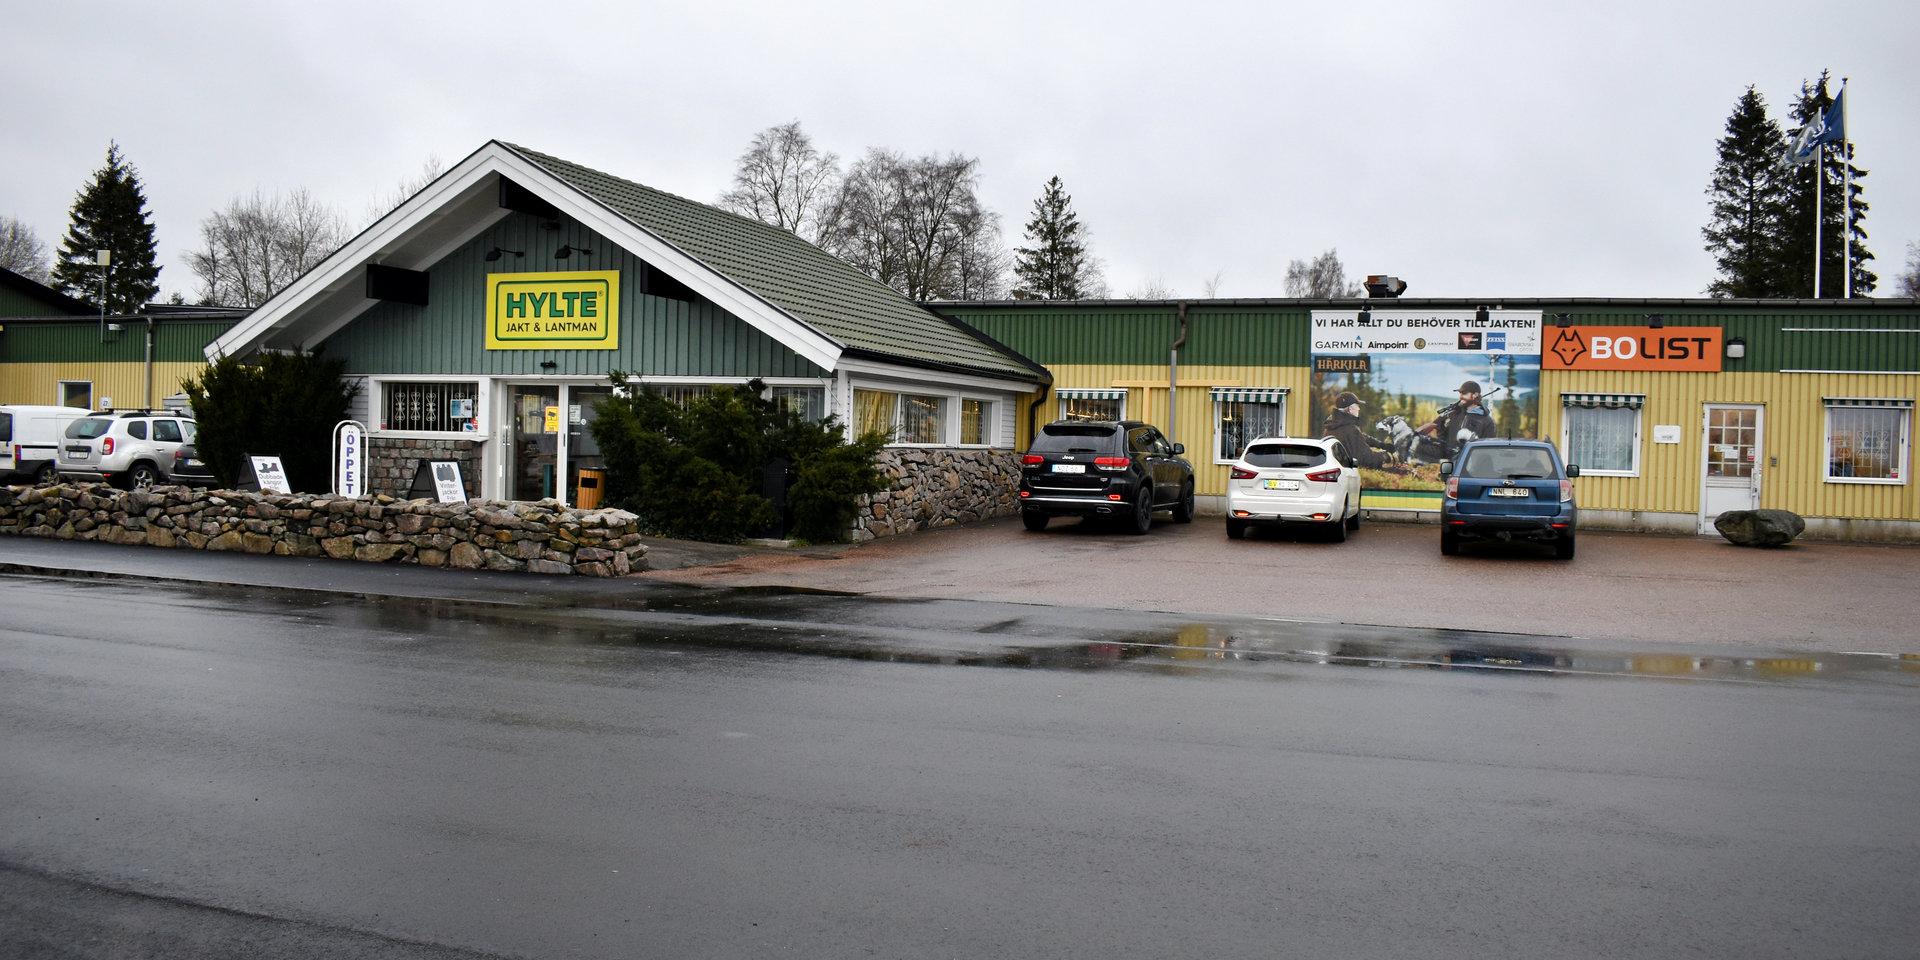 Strax efter klockan 03 natten till fredag gick inbrottslarmet vid butiken Hylte Jakt och Lantman i södra industriområdet i Hyltebruk.